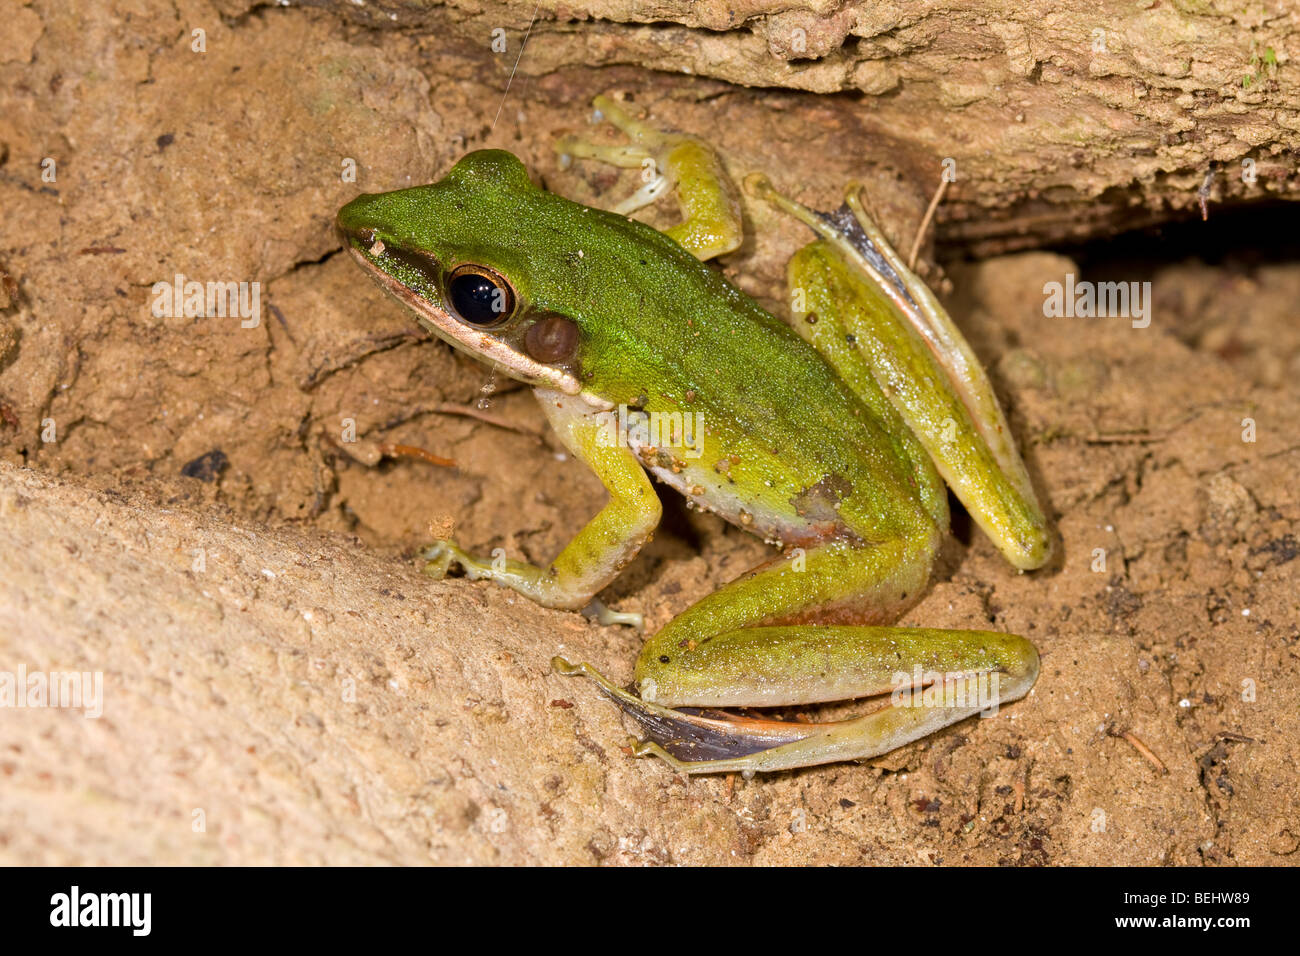 Poisonous Rock Frog, Danum Valley, Borneo Stock Photo